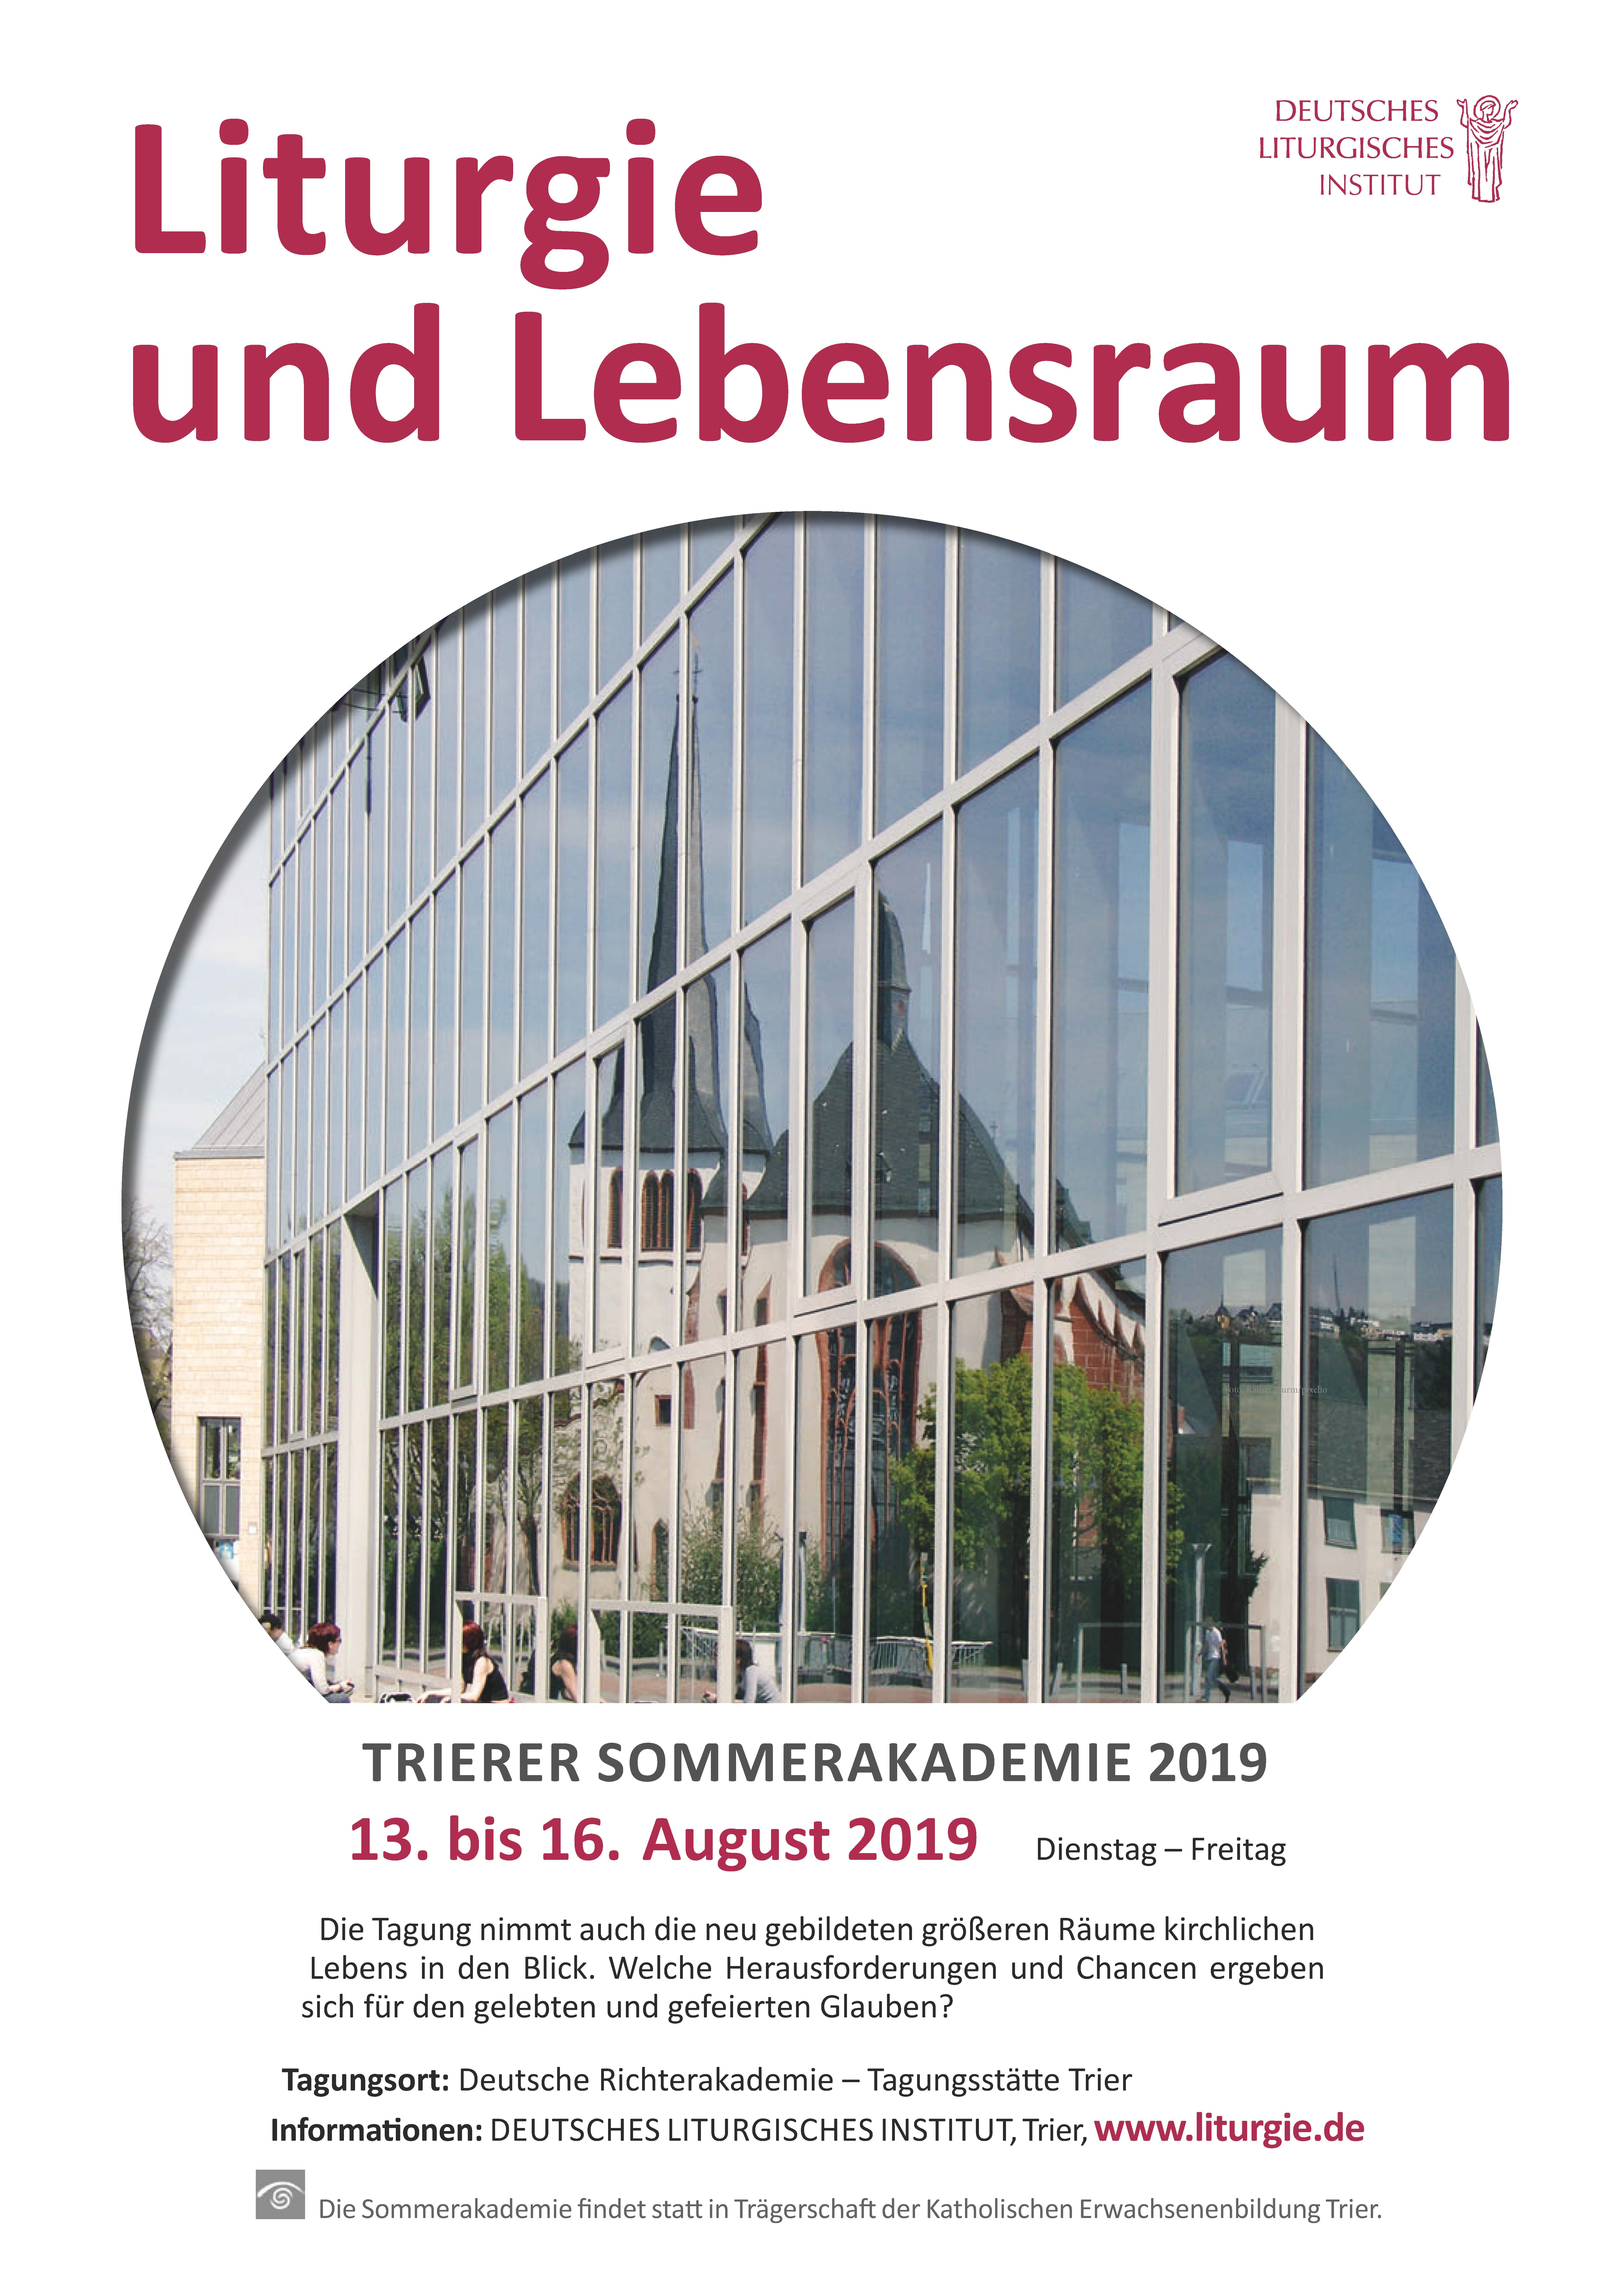 18. Trierer Sommerakademie Liturgie (13.08. - 16.08.2019)